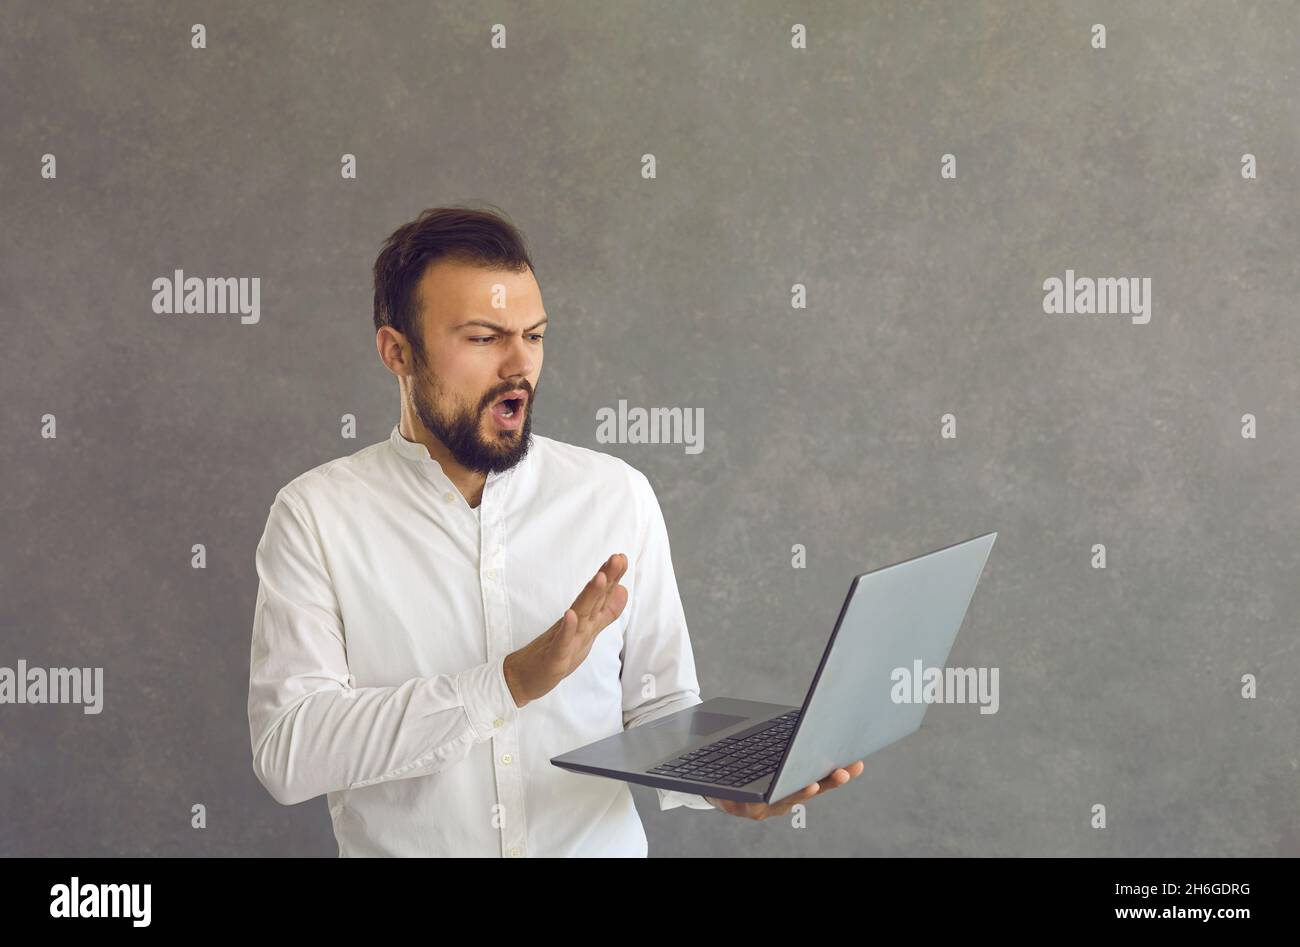 Un homme caucasien outragé, perplexe, regarde l'écran d'un ordinateur portable et fait un geste de refus en disant non Banque D'Images